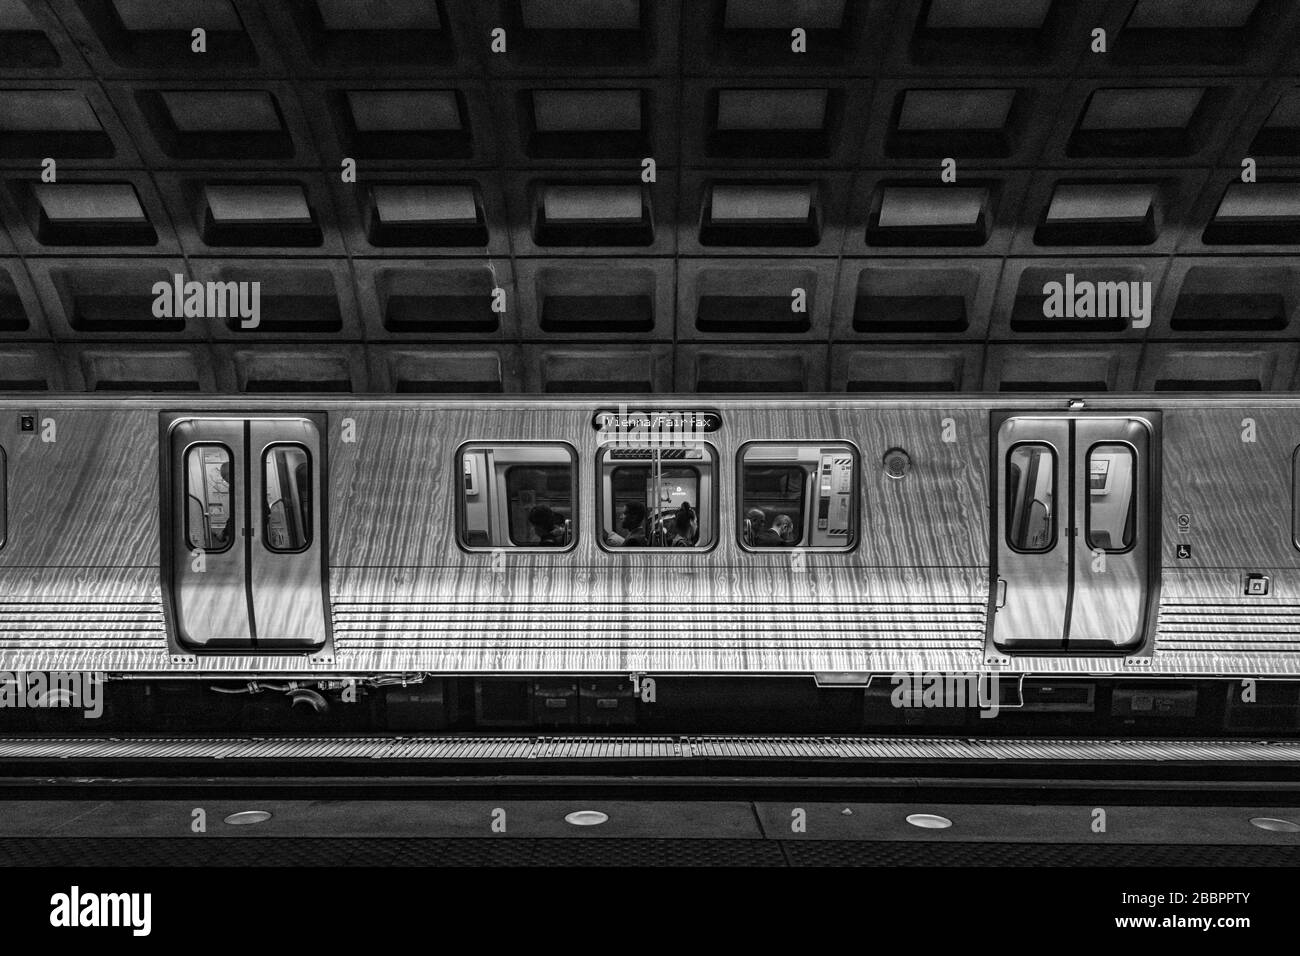 Un treno della metropolitana linea Orange Vienna/'Fairfax si trova sotto il soffitto a cassettoni in cemento della McPherson Square Station, Washington DC. Foto Stock